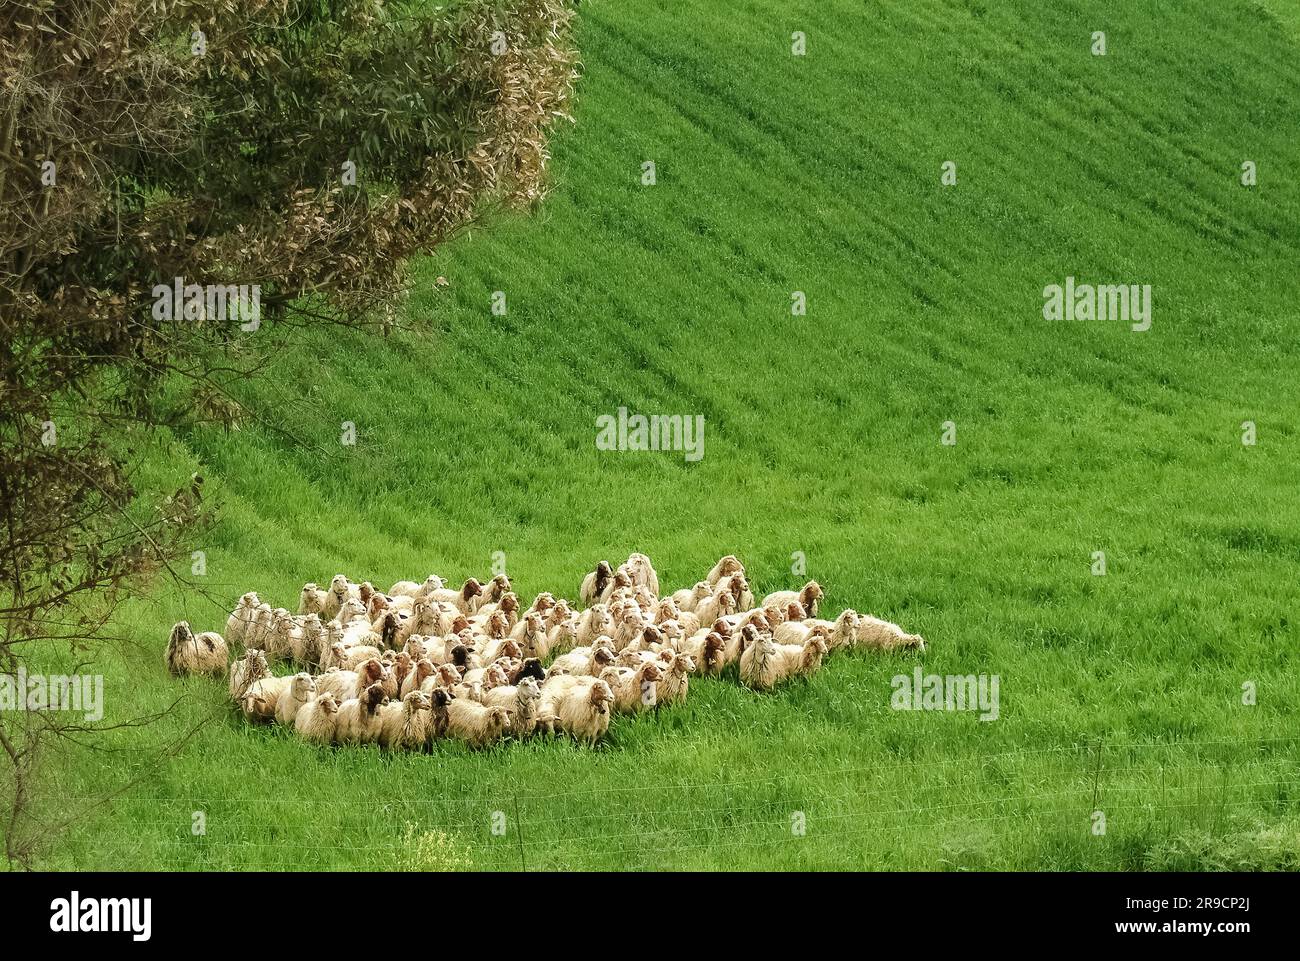 Italie Sicile moutons de la race Comisana Banque D'Images